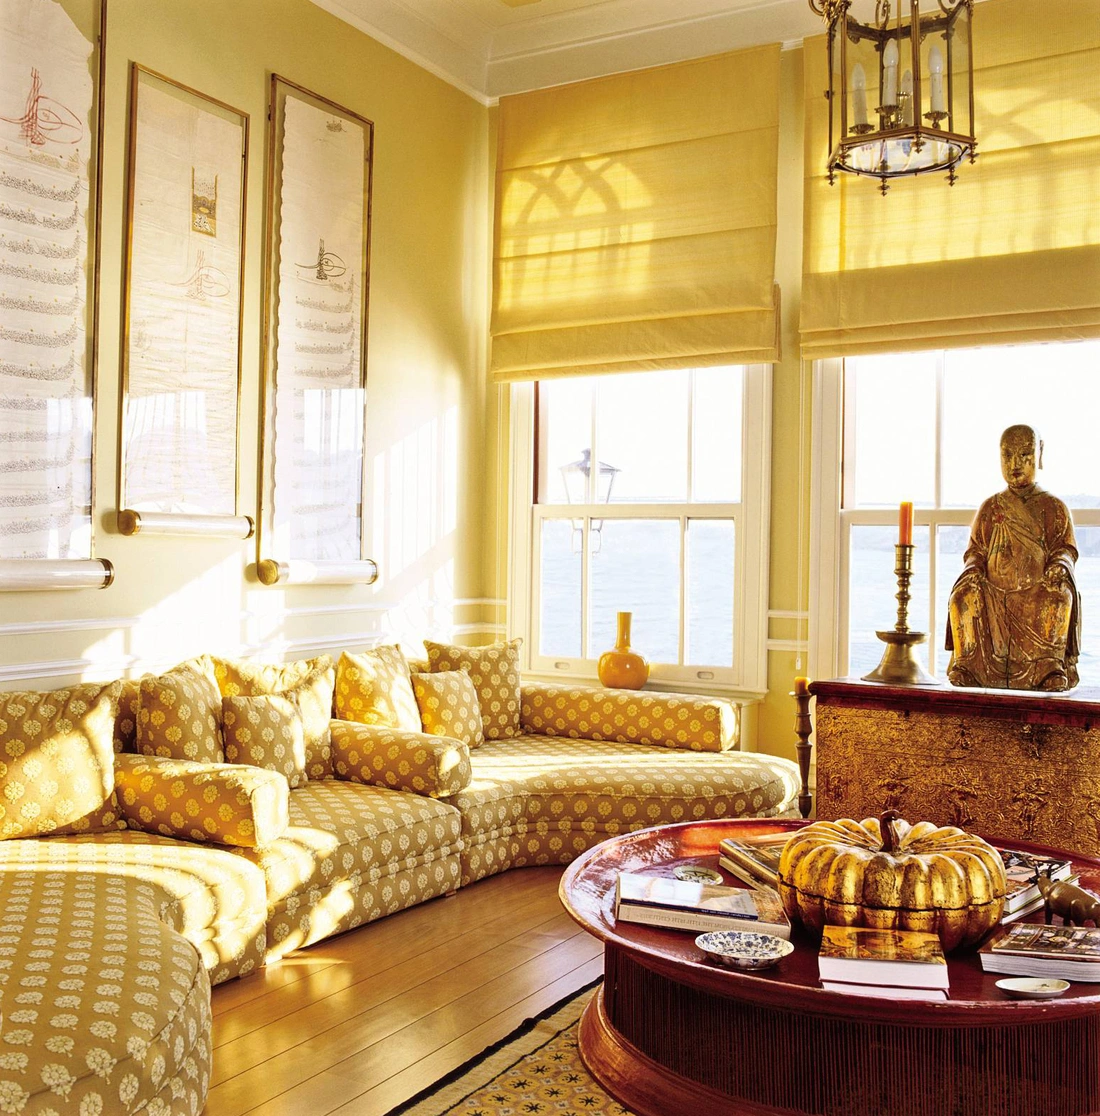 Гостинная в индийском стиле,благодаря цветовому решению, позитивна и жизнерадостна.